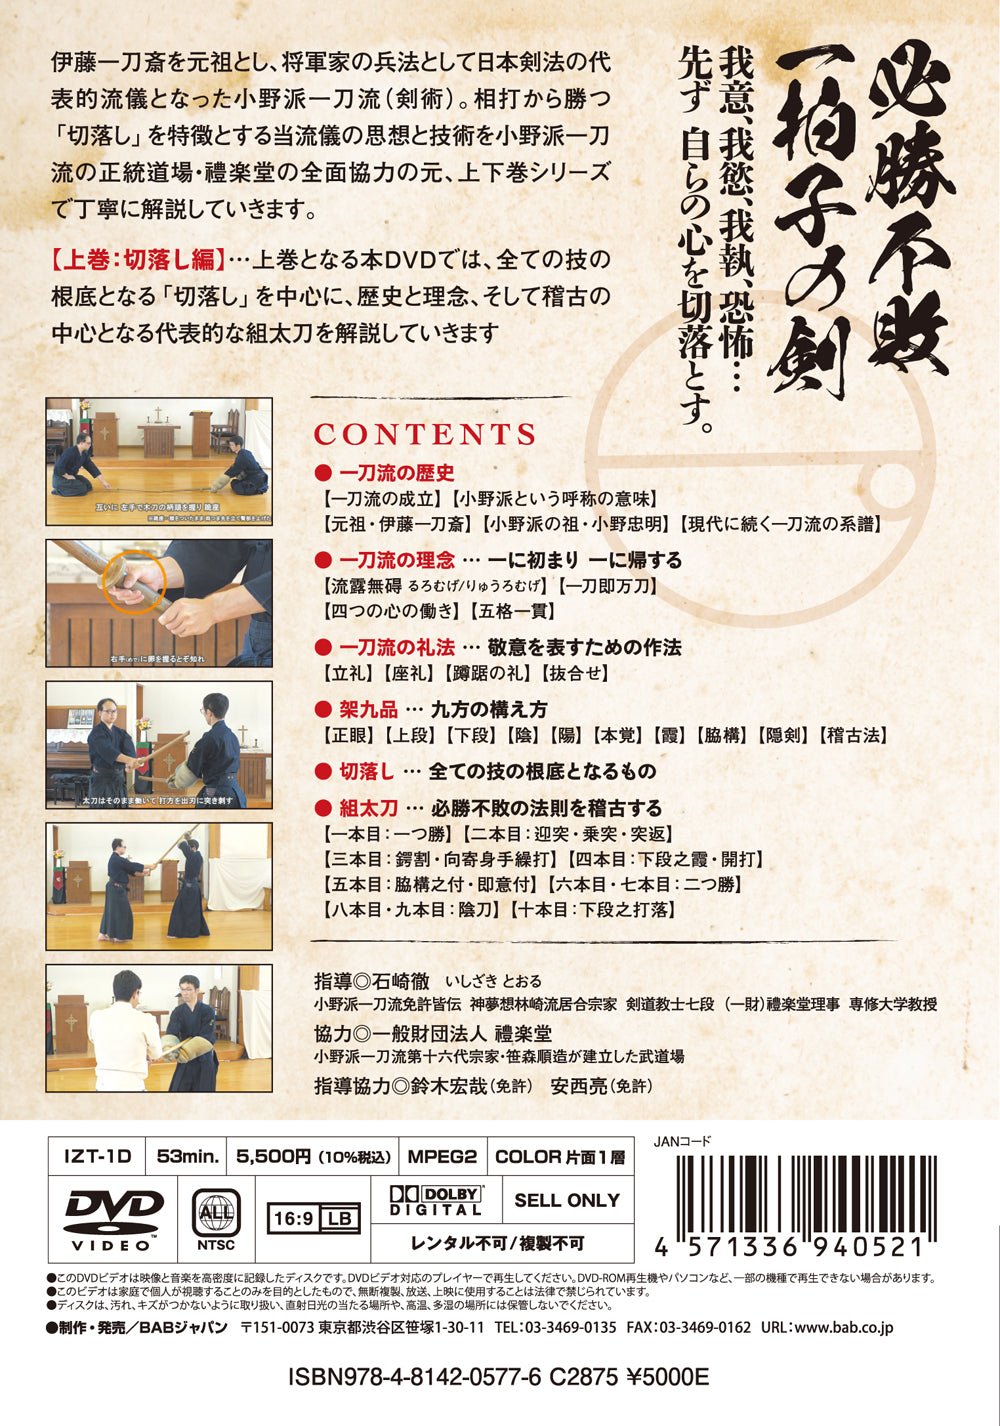 Ono Ha Itto Ryu Kenjutsu Vol 1 DVD by Toru Ishizaki